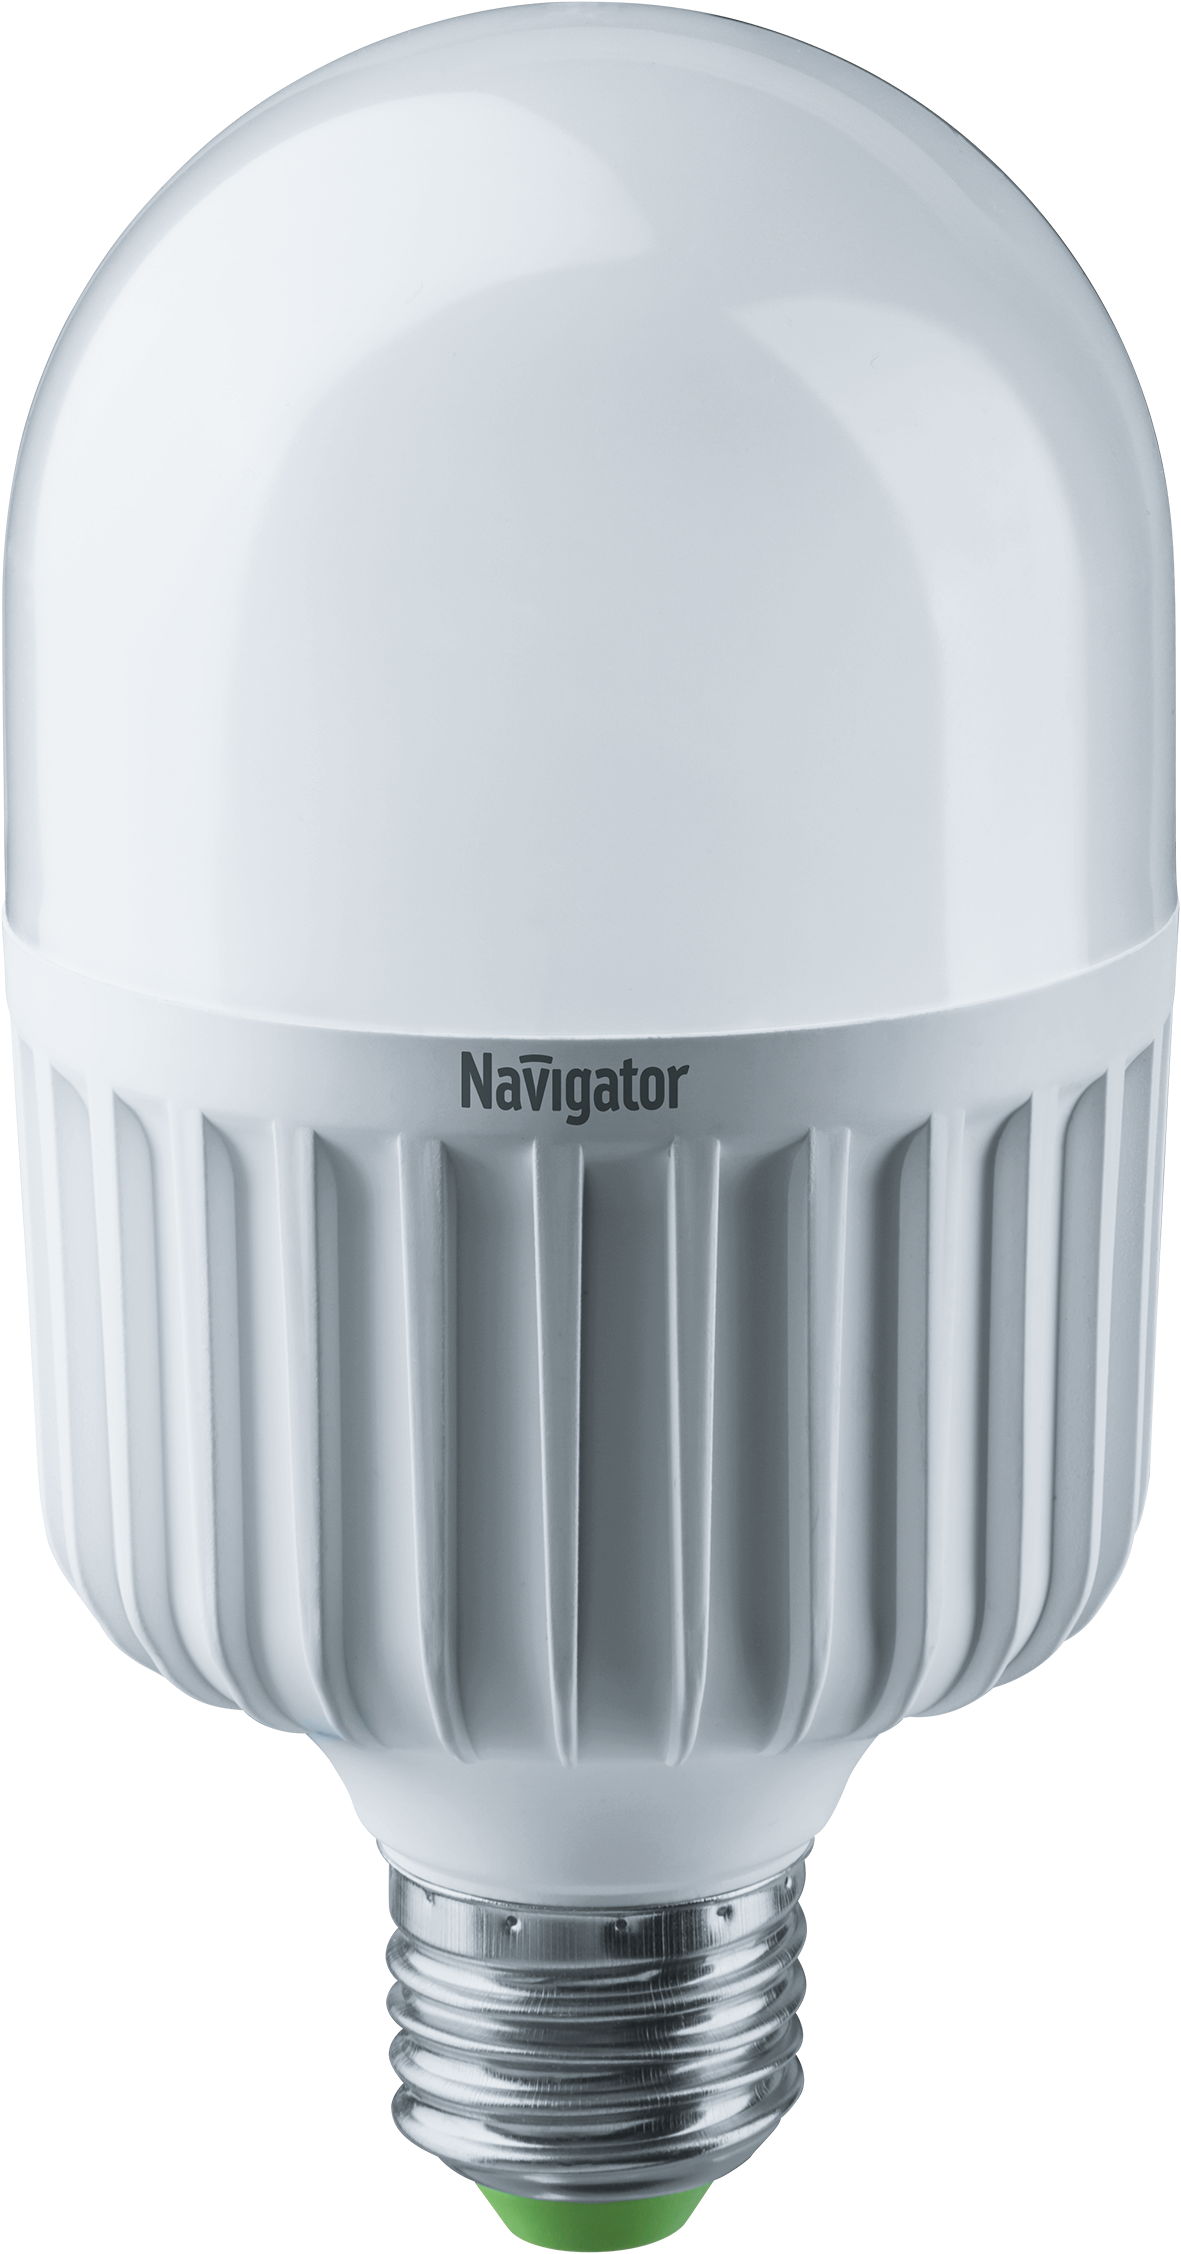 25W  Navigator NLL-T75-25-230-840-E27 94 338